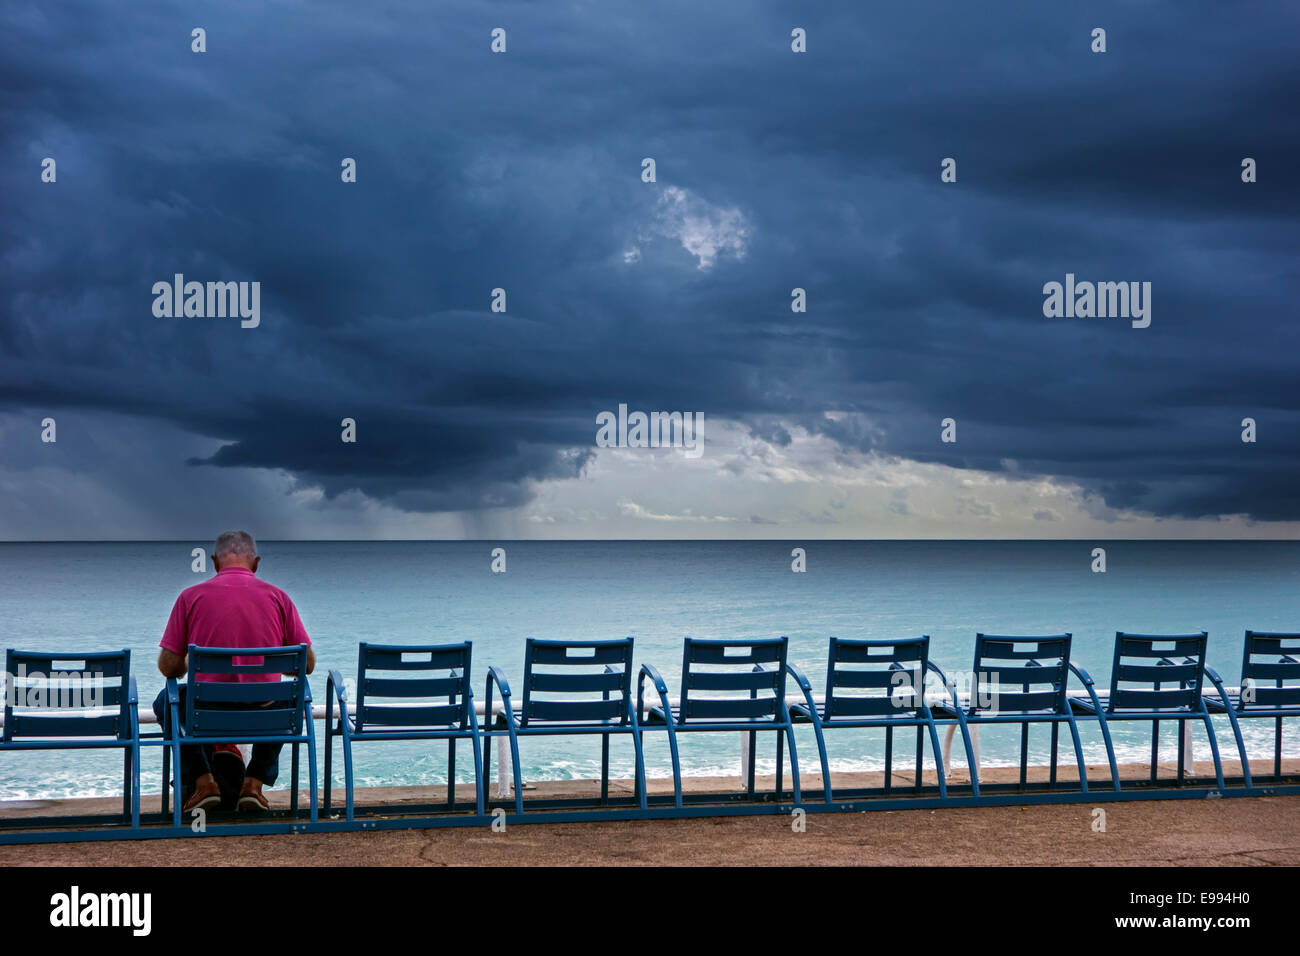 Ältere Mann auf Bank am Deich sitzen und beobachtete dunkle, bedrohliche Gewitterwolken über dem Meer Stockfoto